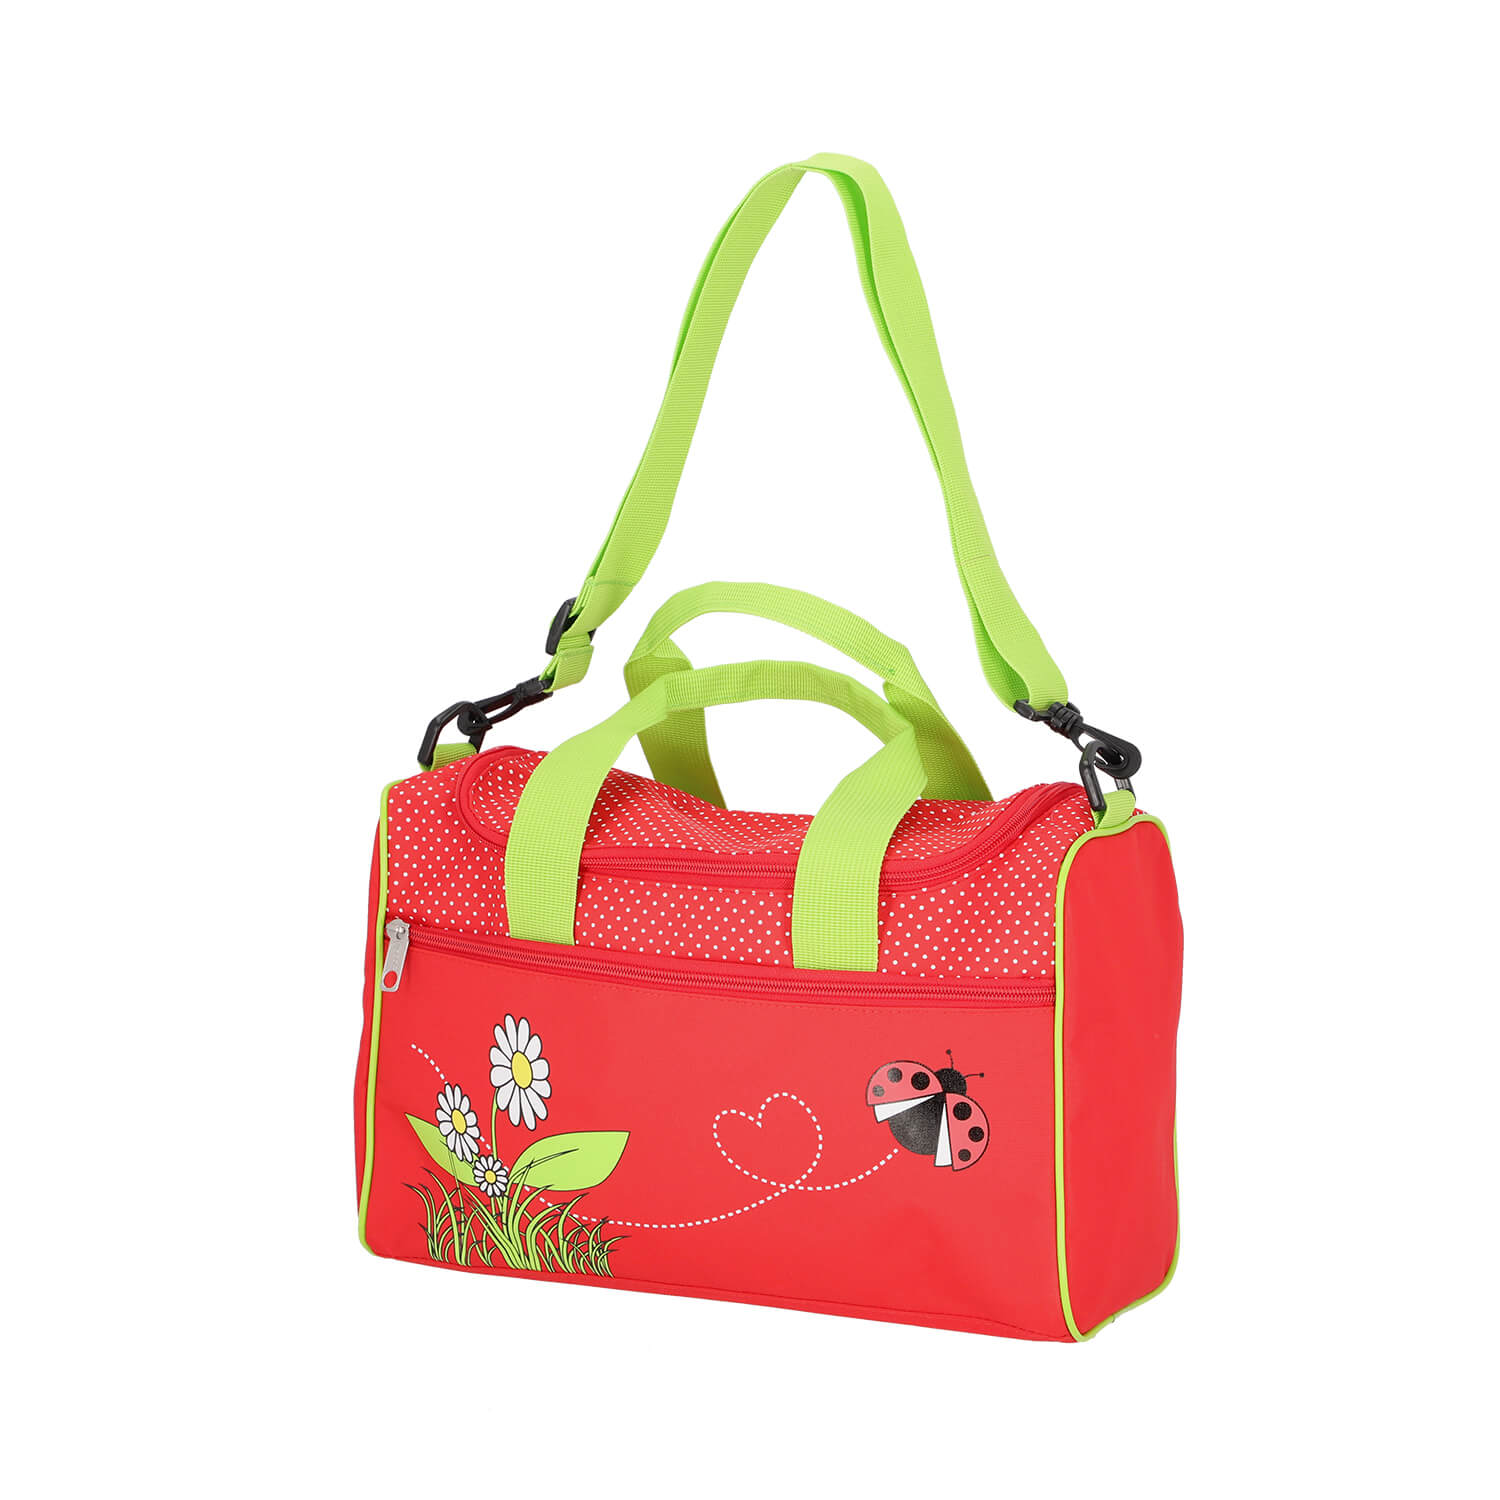 Scooli Sporttasche mit Sweet Beetle Motiv in rot/grün